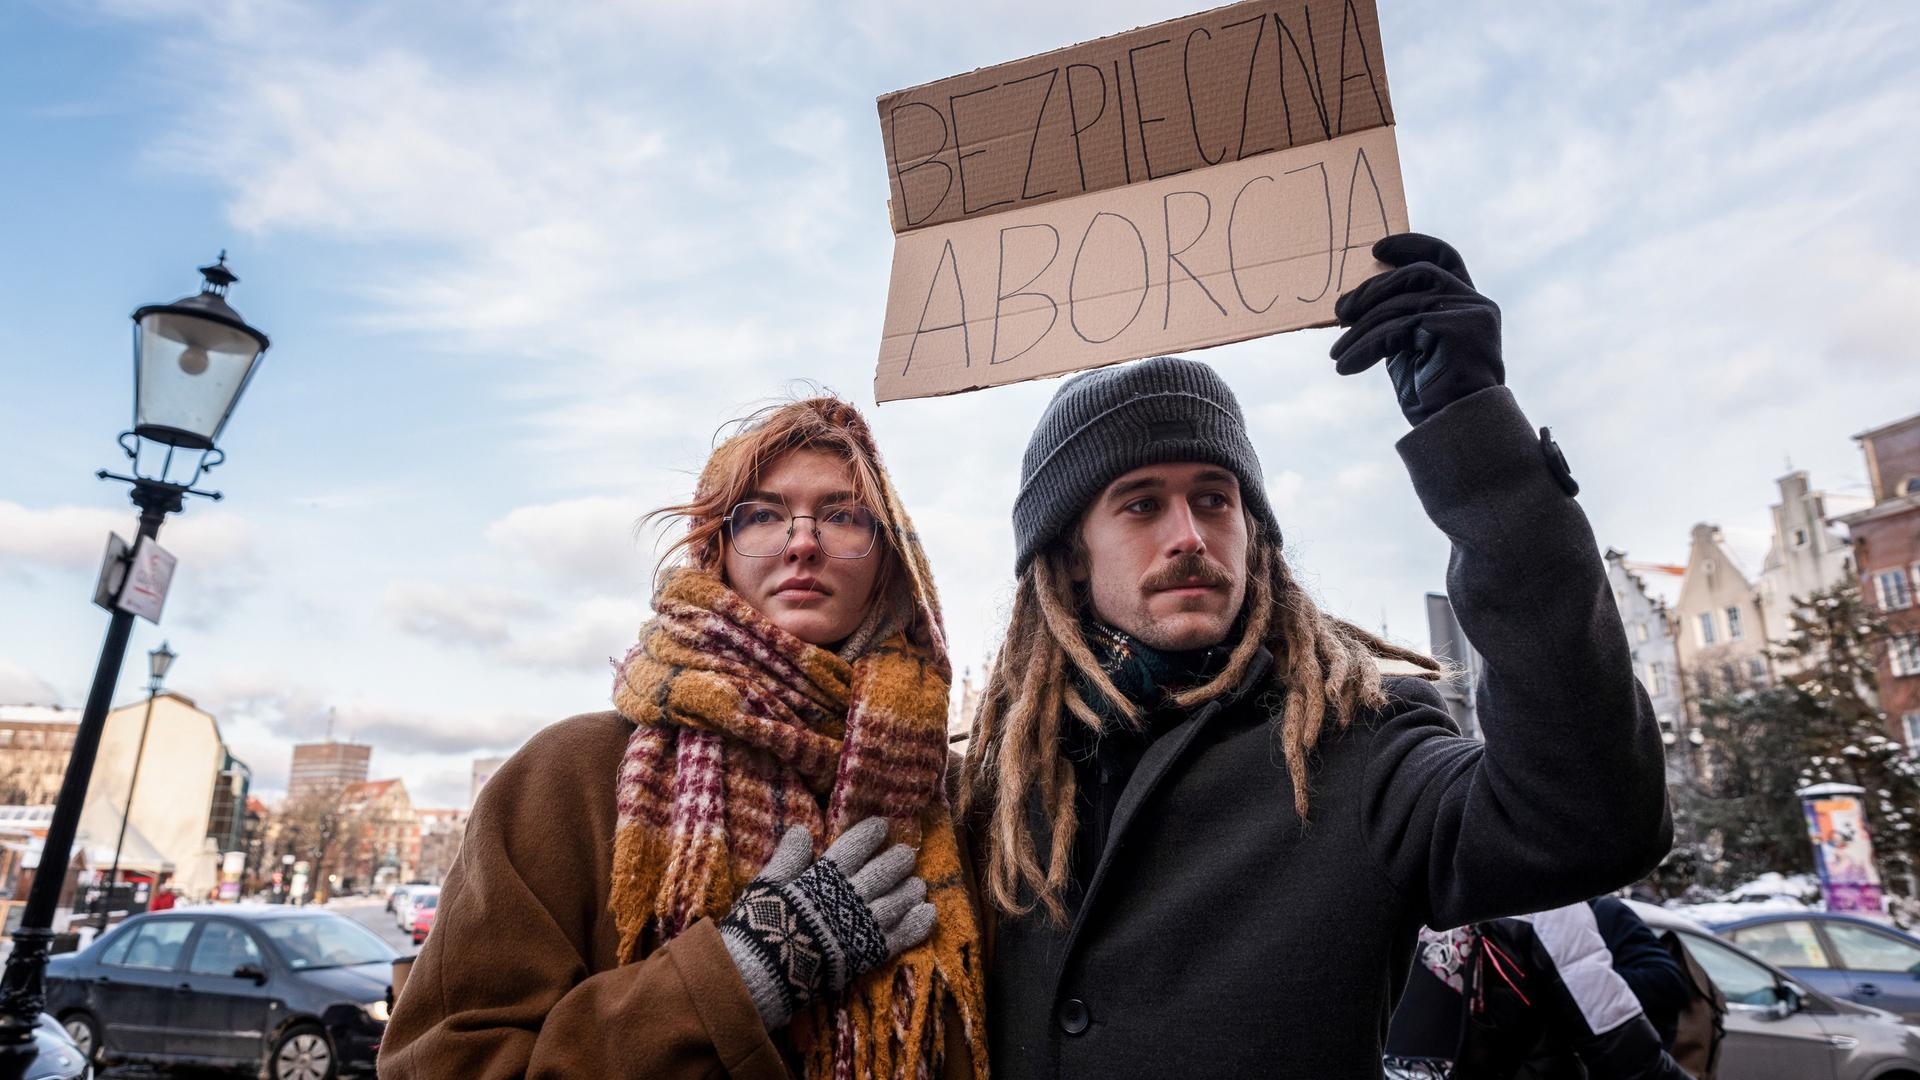 Zwei Demonstrant*innen halten ein Plakat mit der Aufschrift "sichere Abtreibung" in die Luft